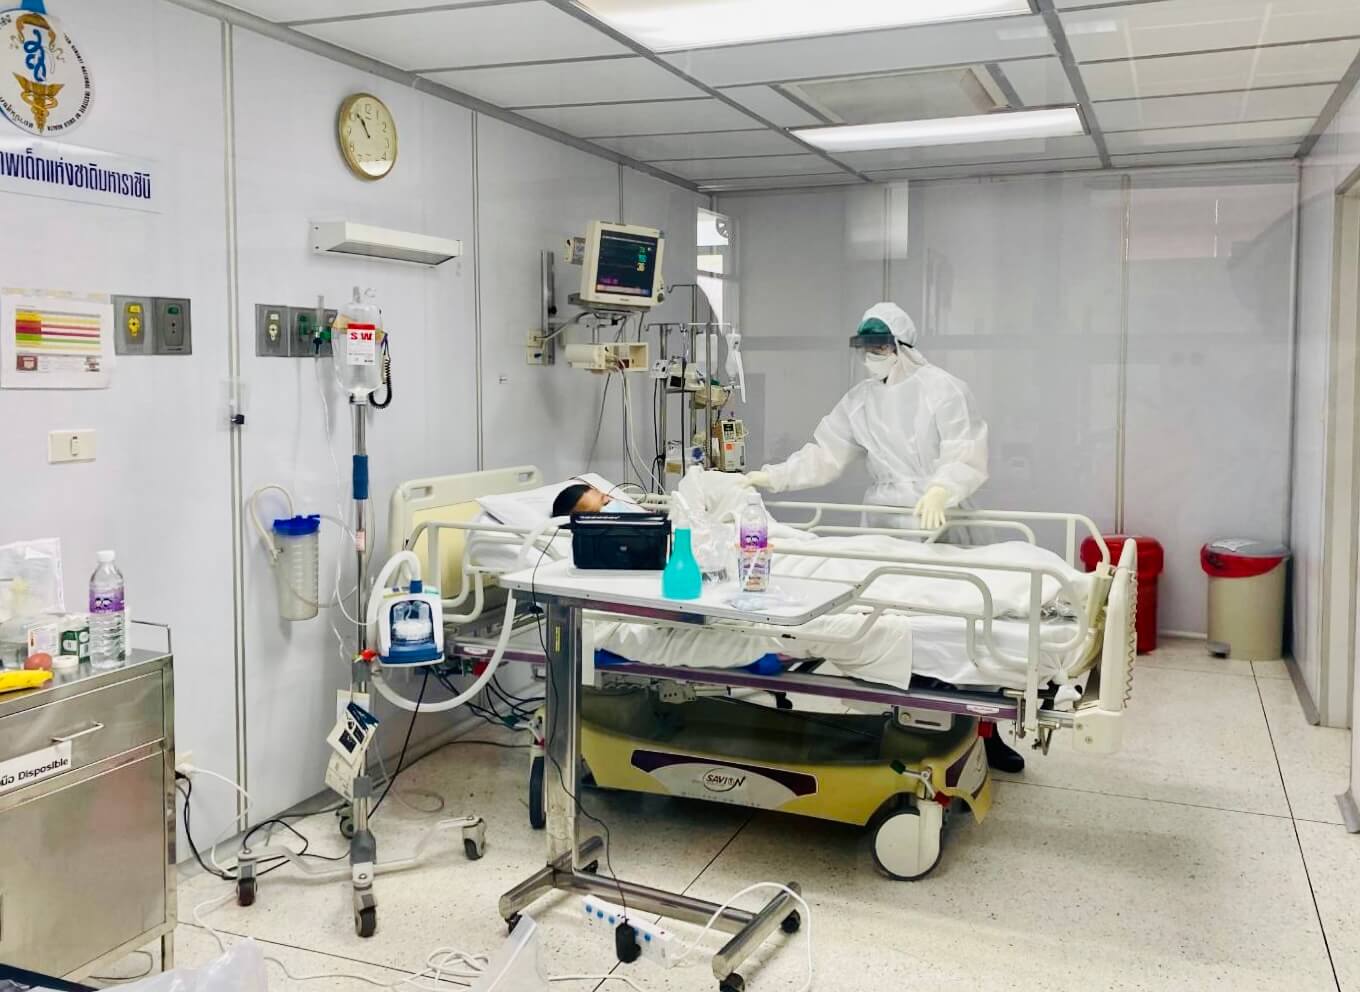 โครงการปรับปรุงห้องตรวจโรคติดเชื้อ รับมือโรคอุบัติใหม่ในเด็ก มูลนิธิโรงพยาบาลเด็ก กองทุนอาคารเฉลิมพระเกียรติฯ